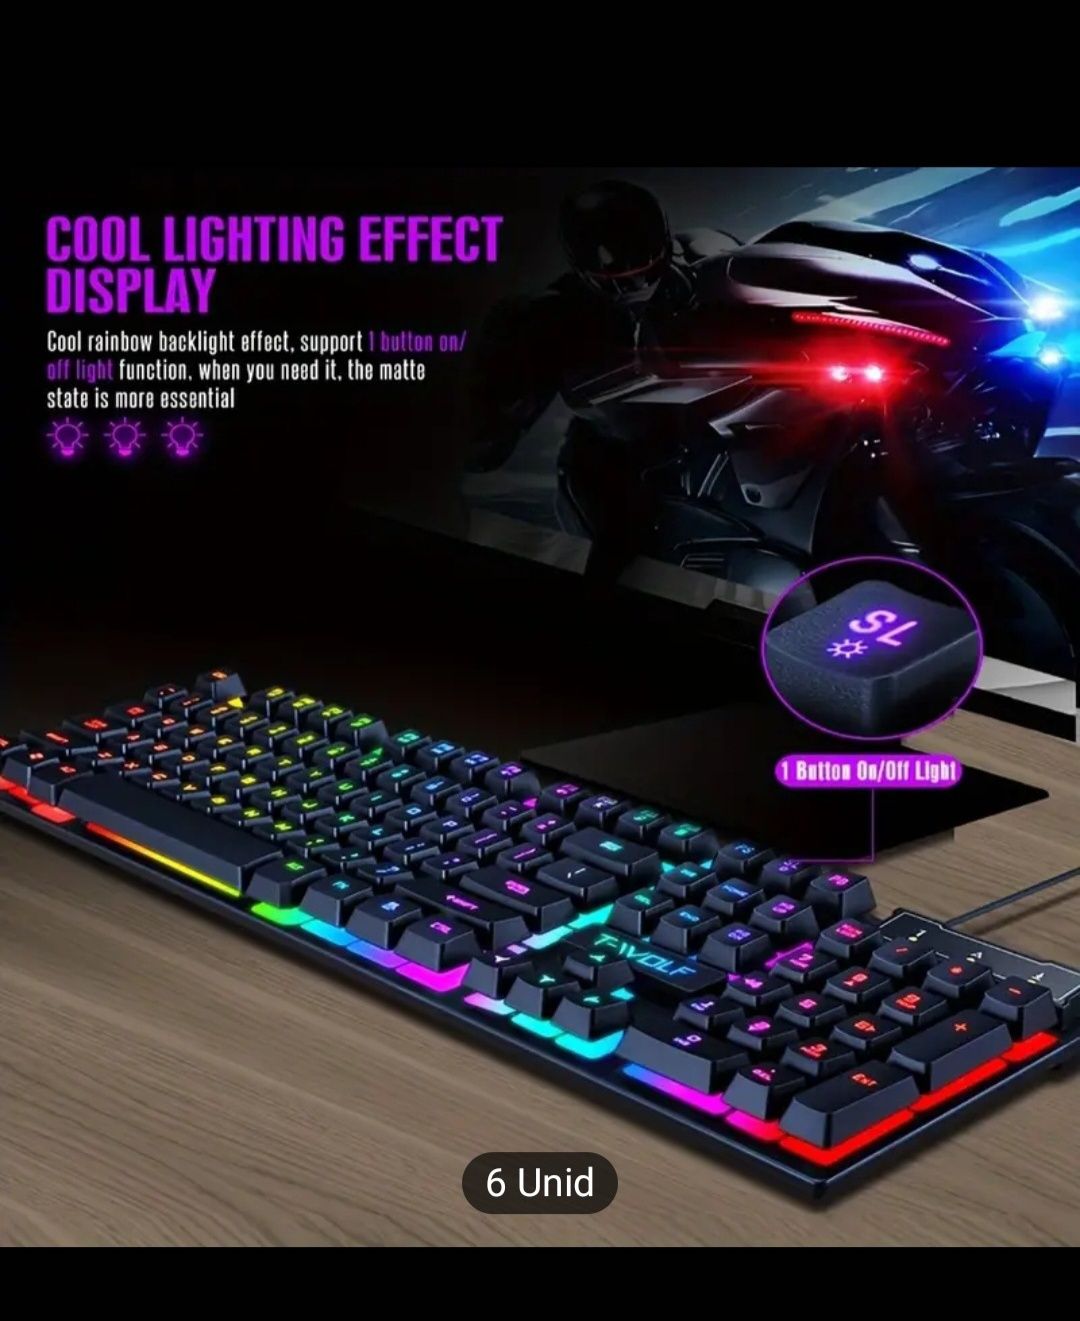 Teclado gaming RGB Luminescente Mecânico